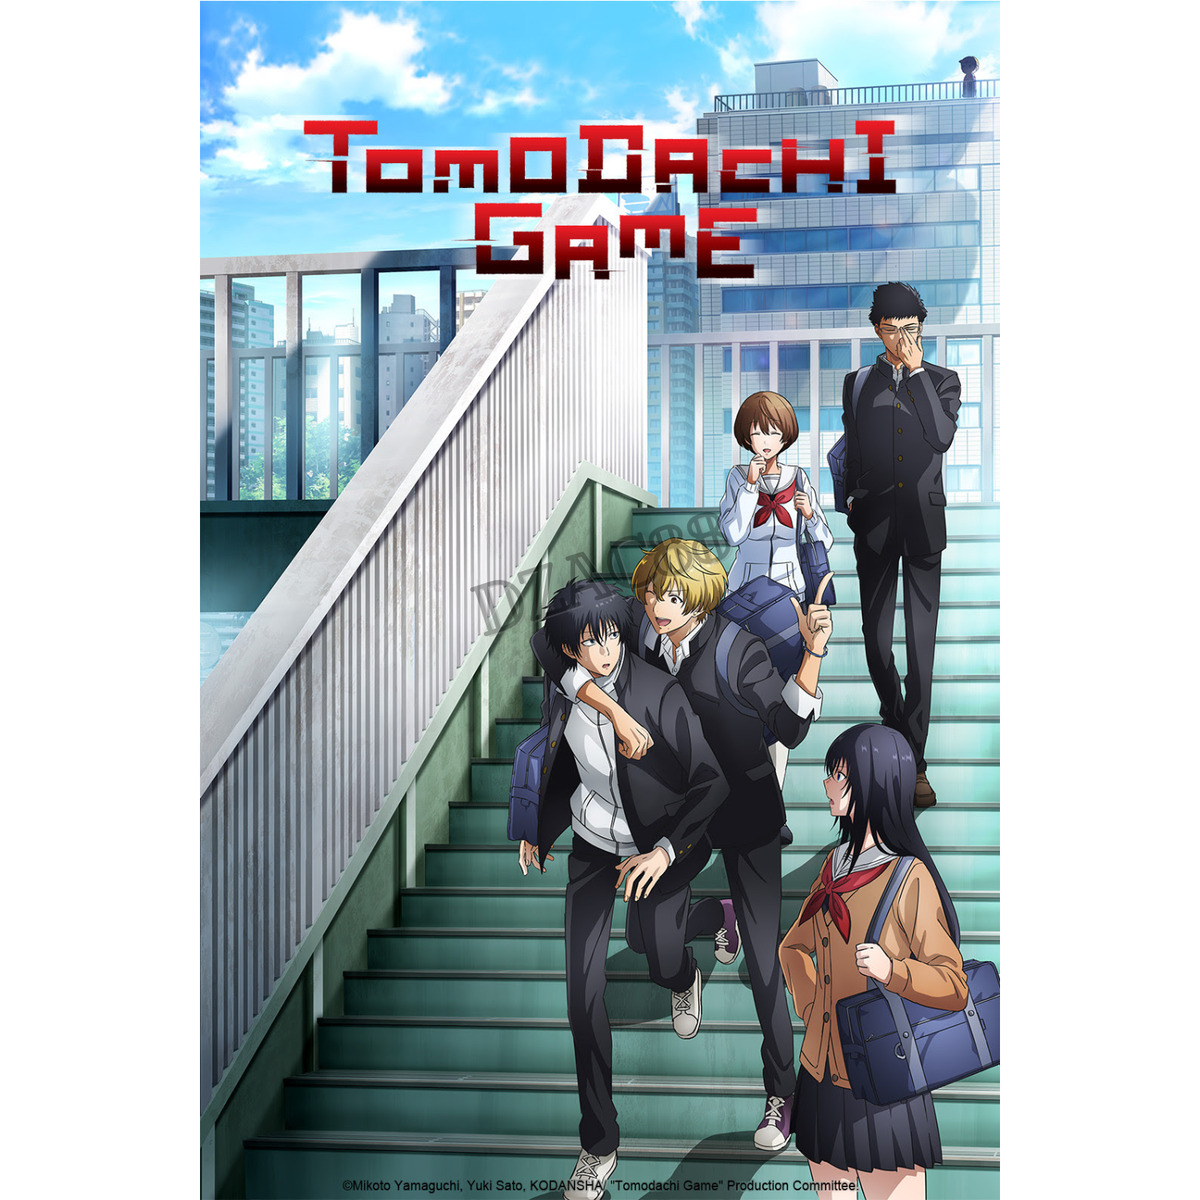 Anime DVD Tomodachi Game Vol. 1-12 End ENGLISH DUB & SUB Region 0 FREE  SHIPPING